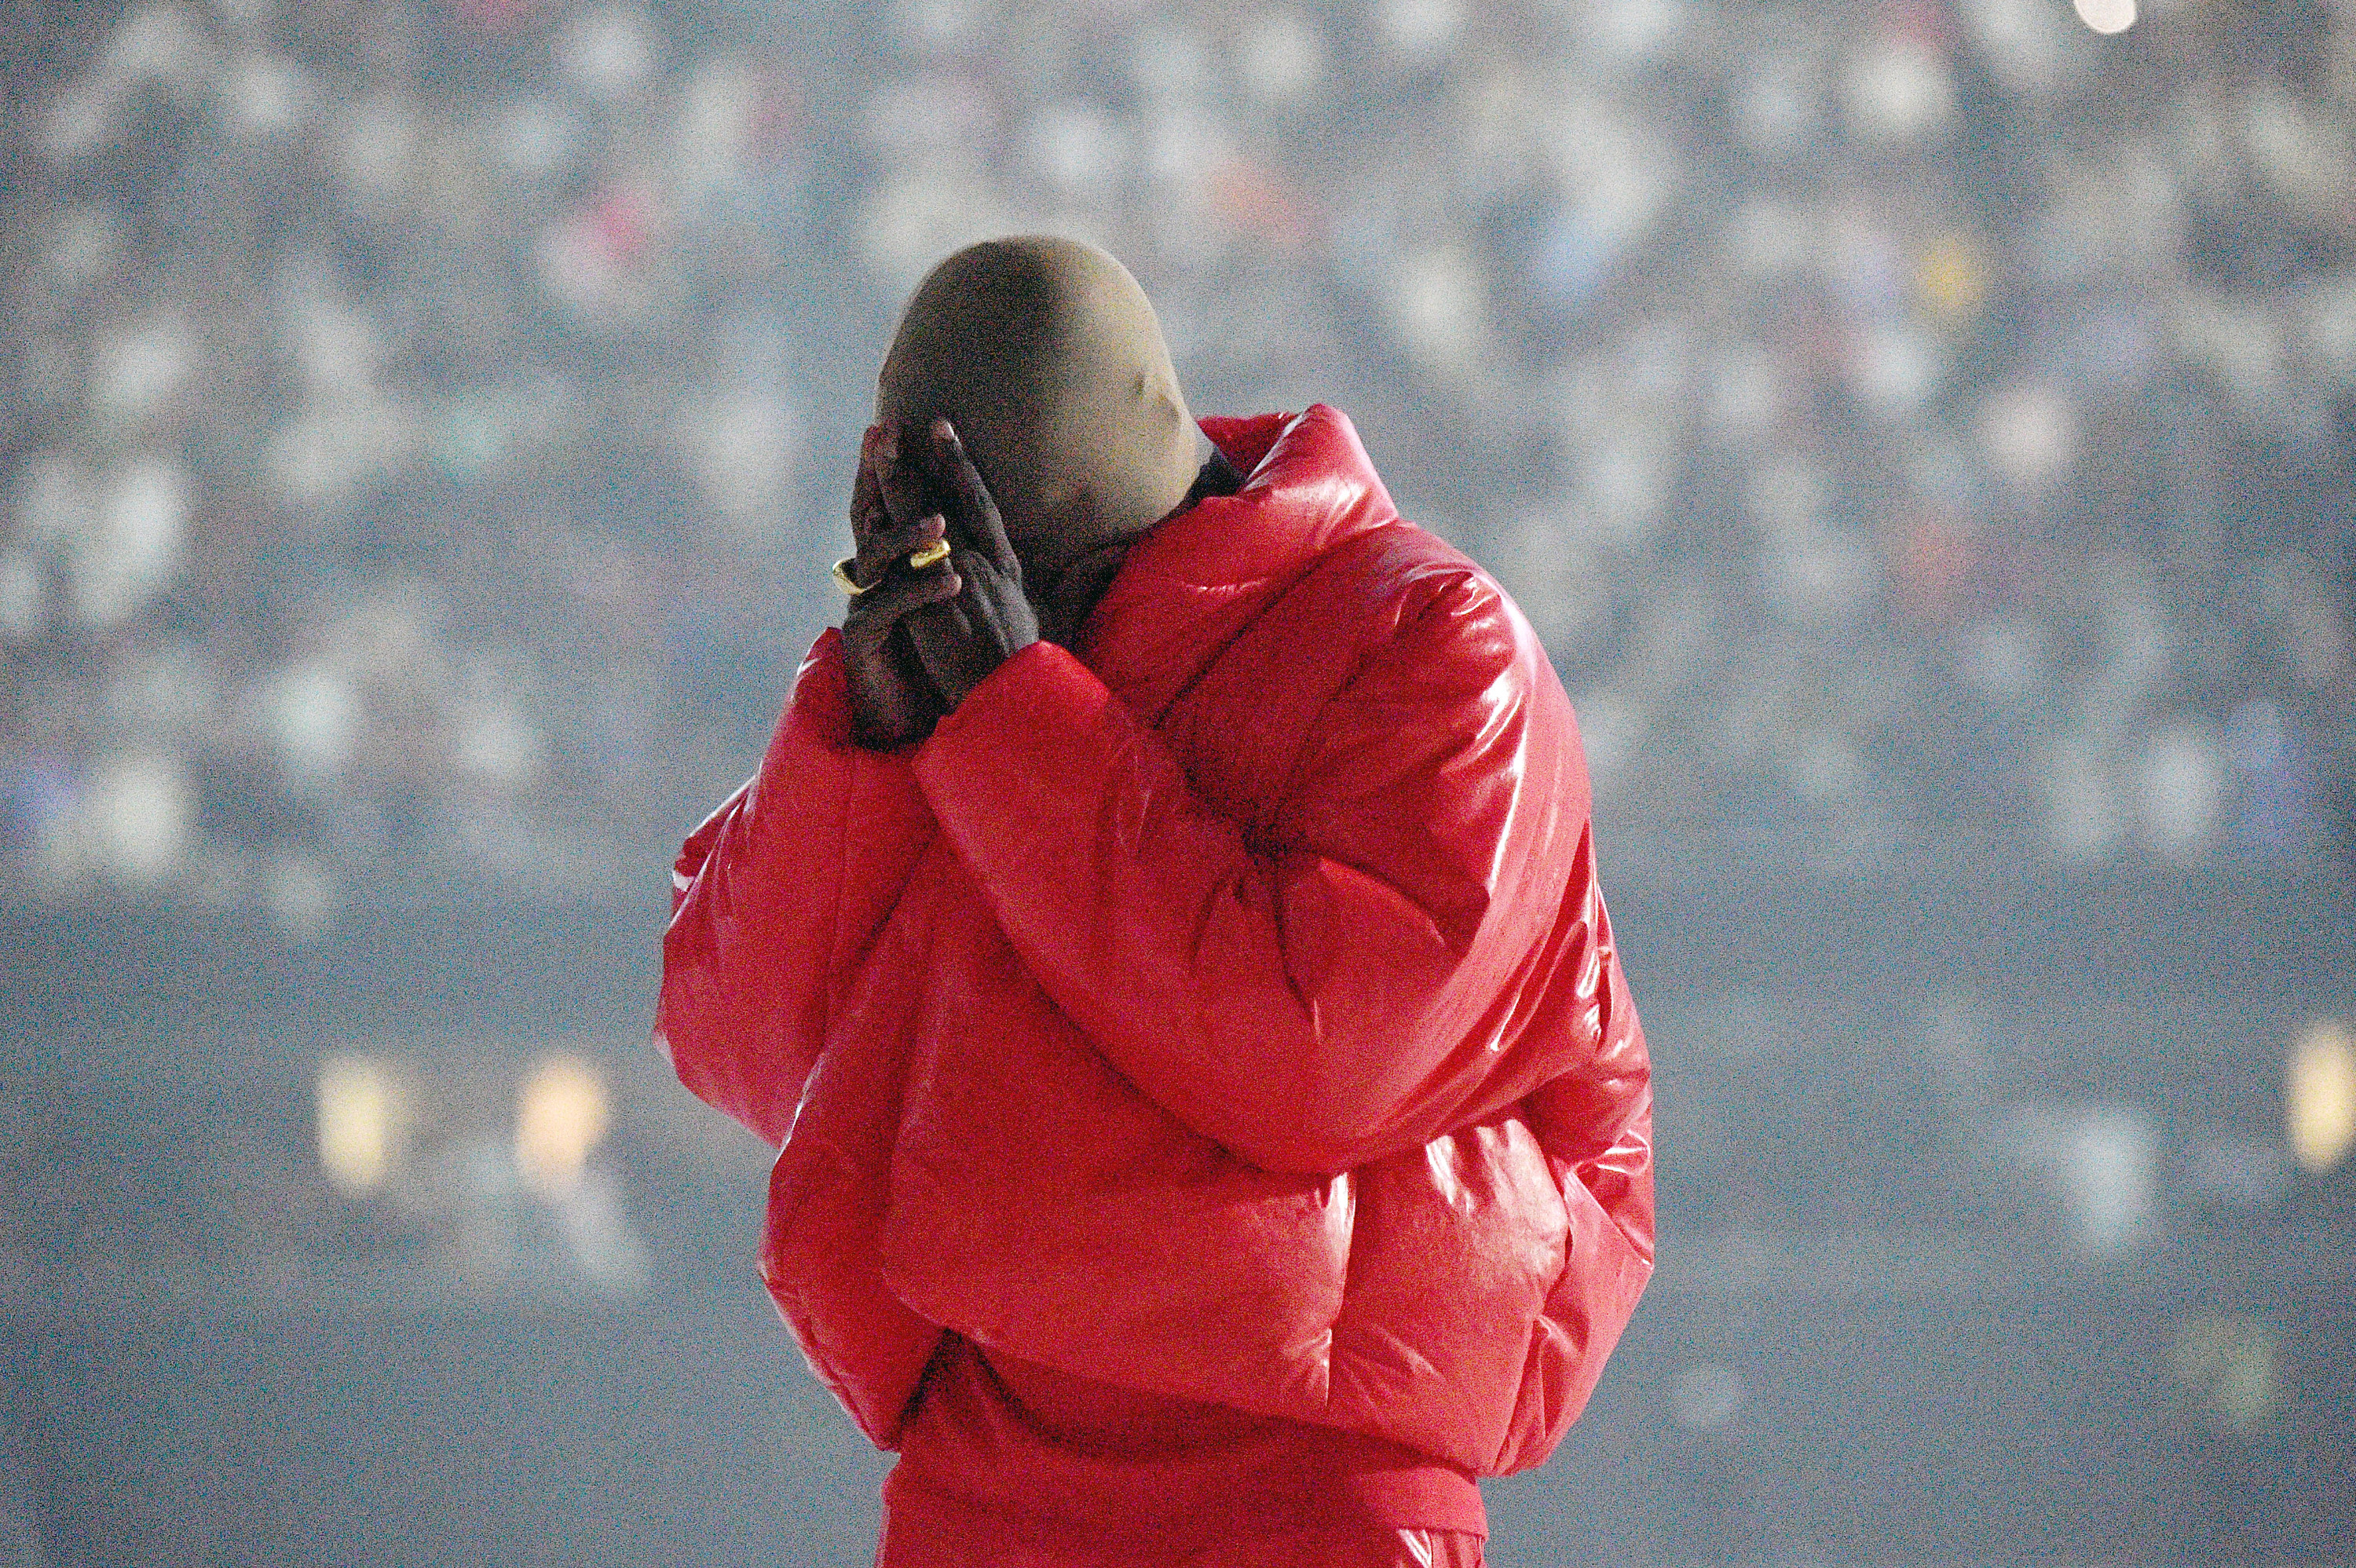 オーディオ機器 ポータブルプレーヤー Kanye West Sparked Backlash After Revealing His New Album 